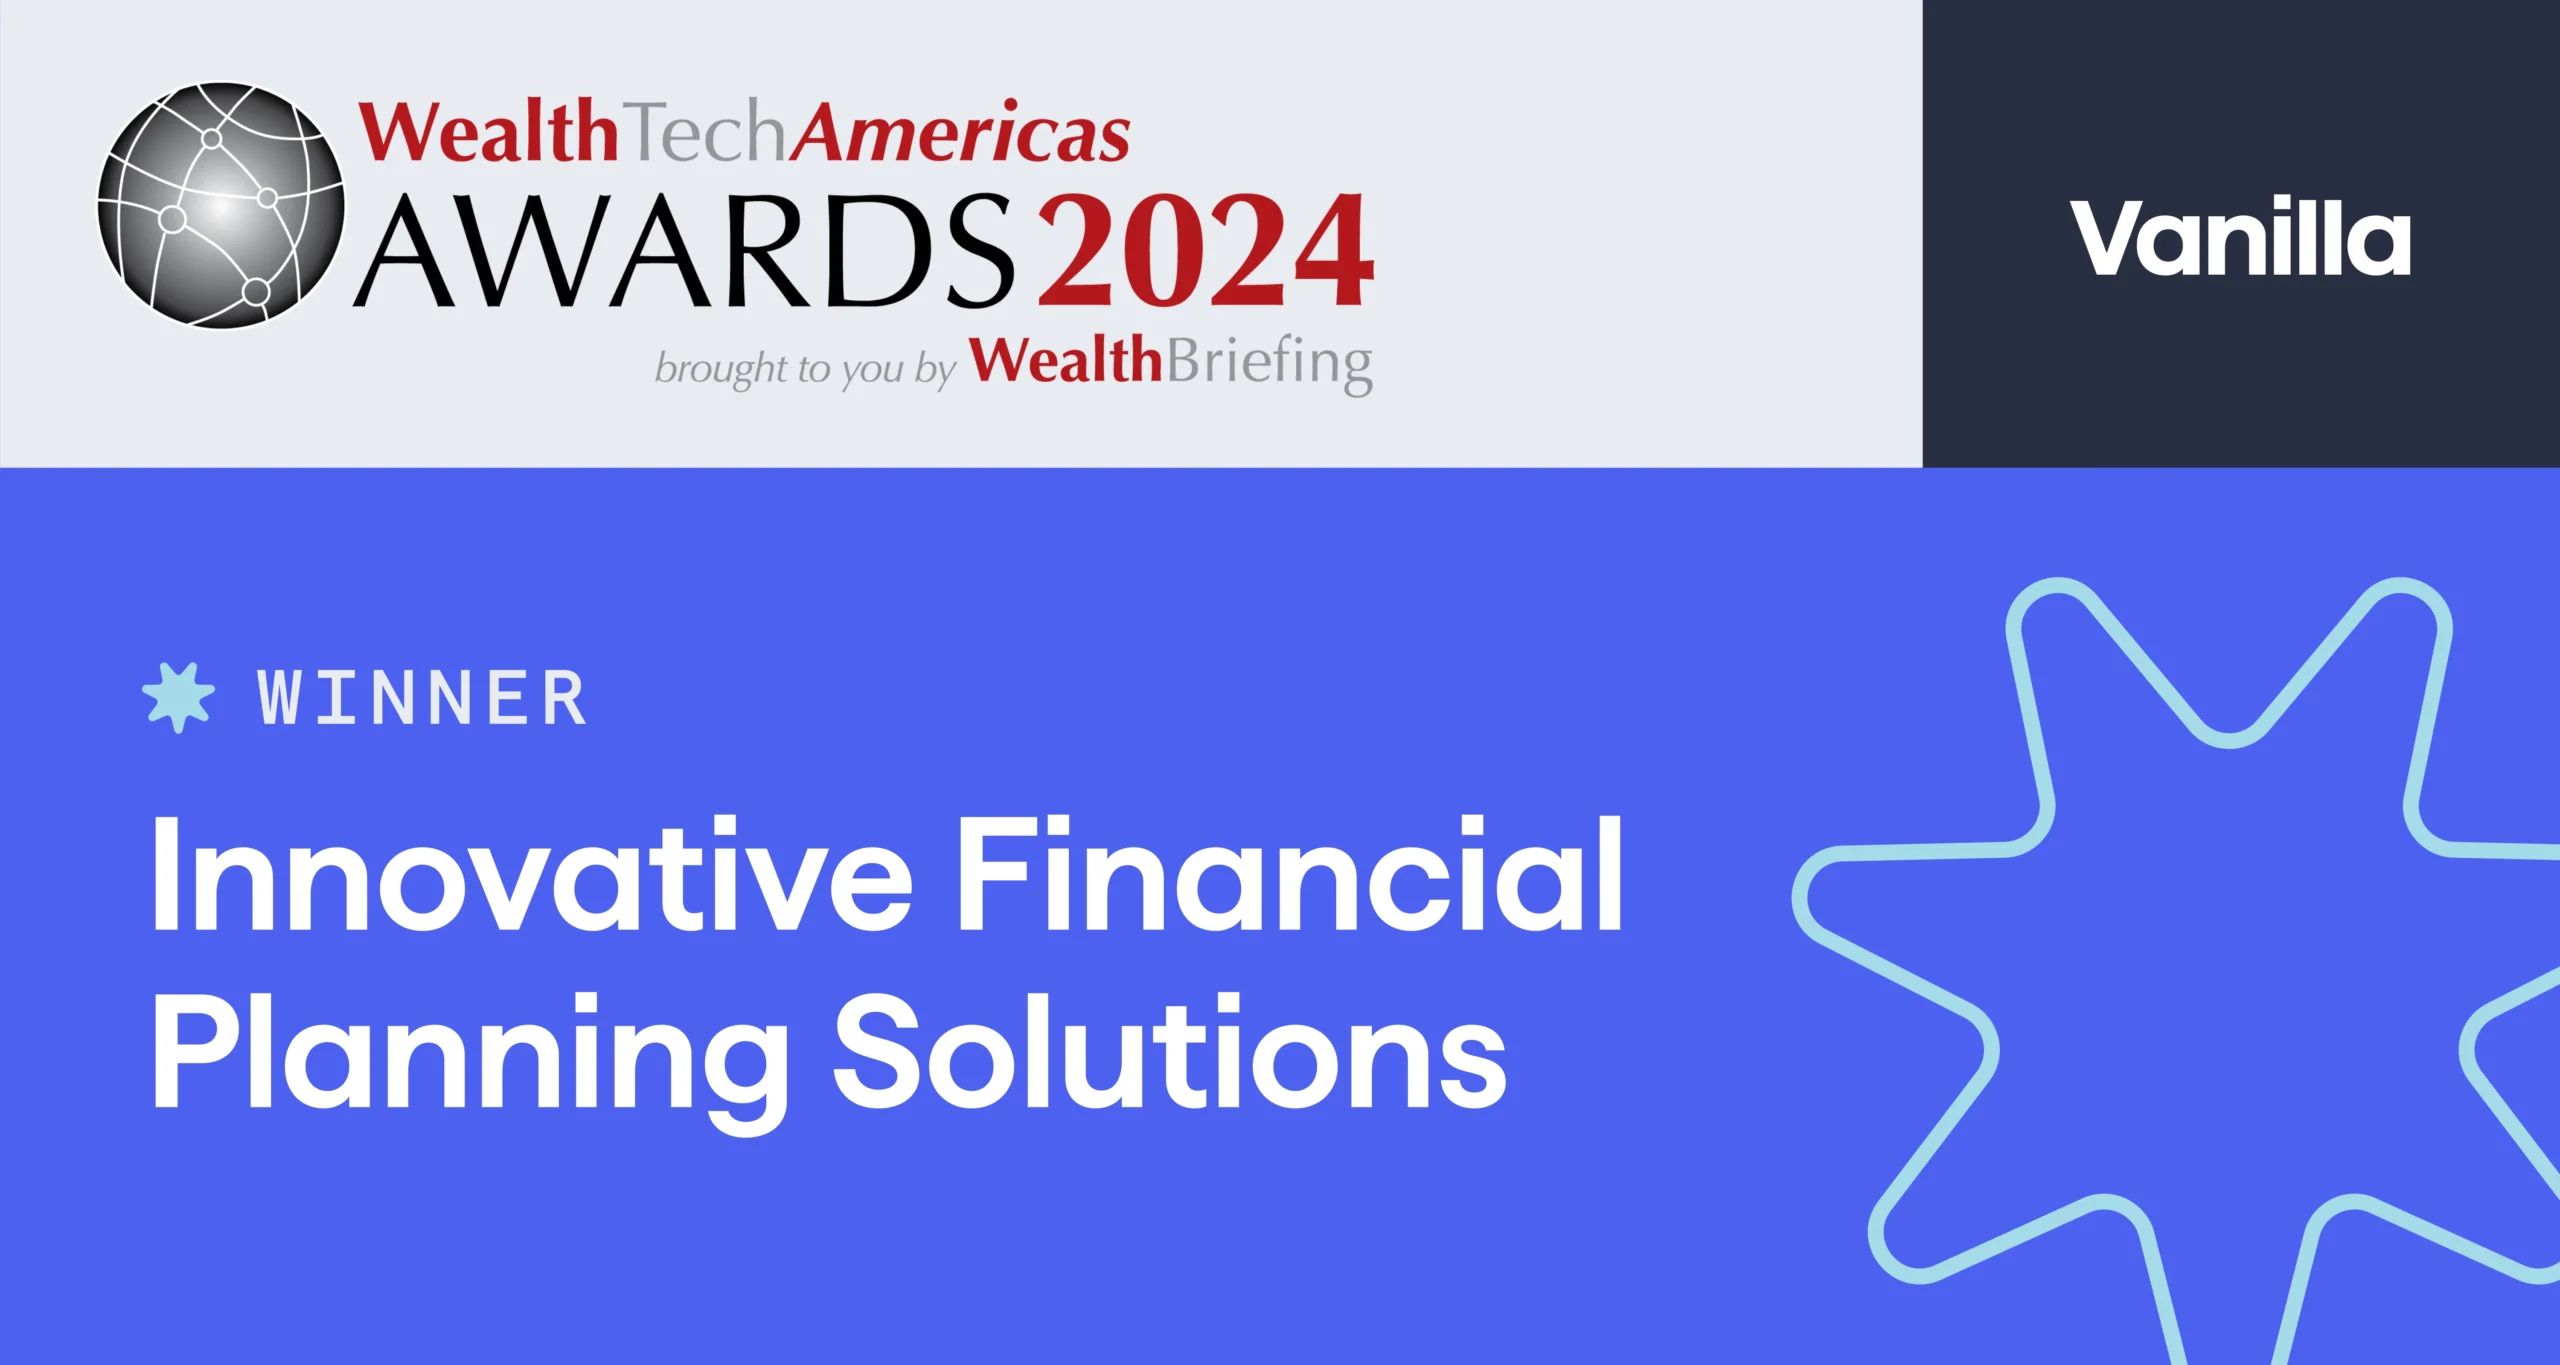 Winner of Innovative Financial Planning Solutions award